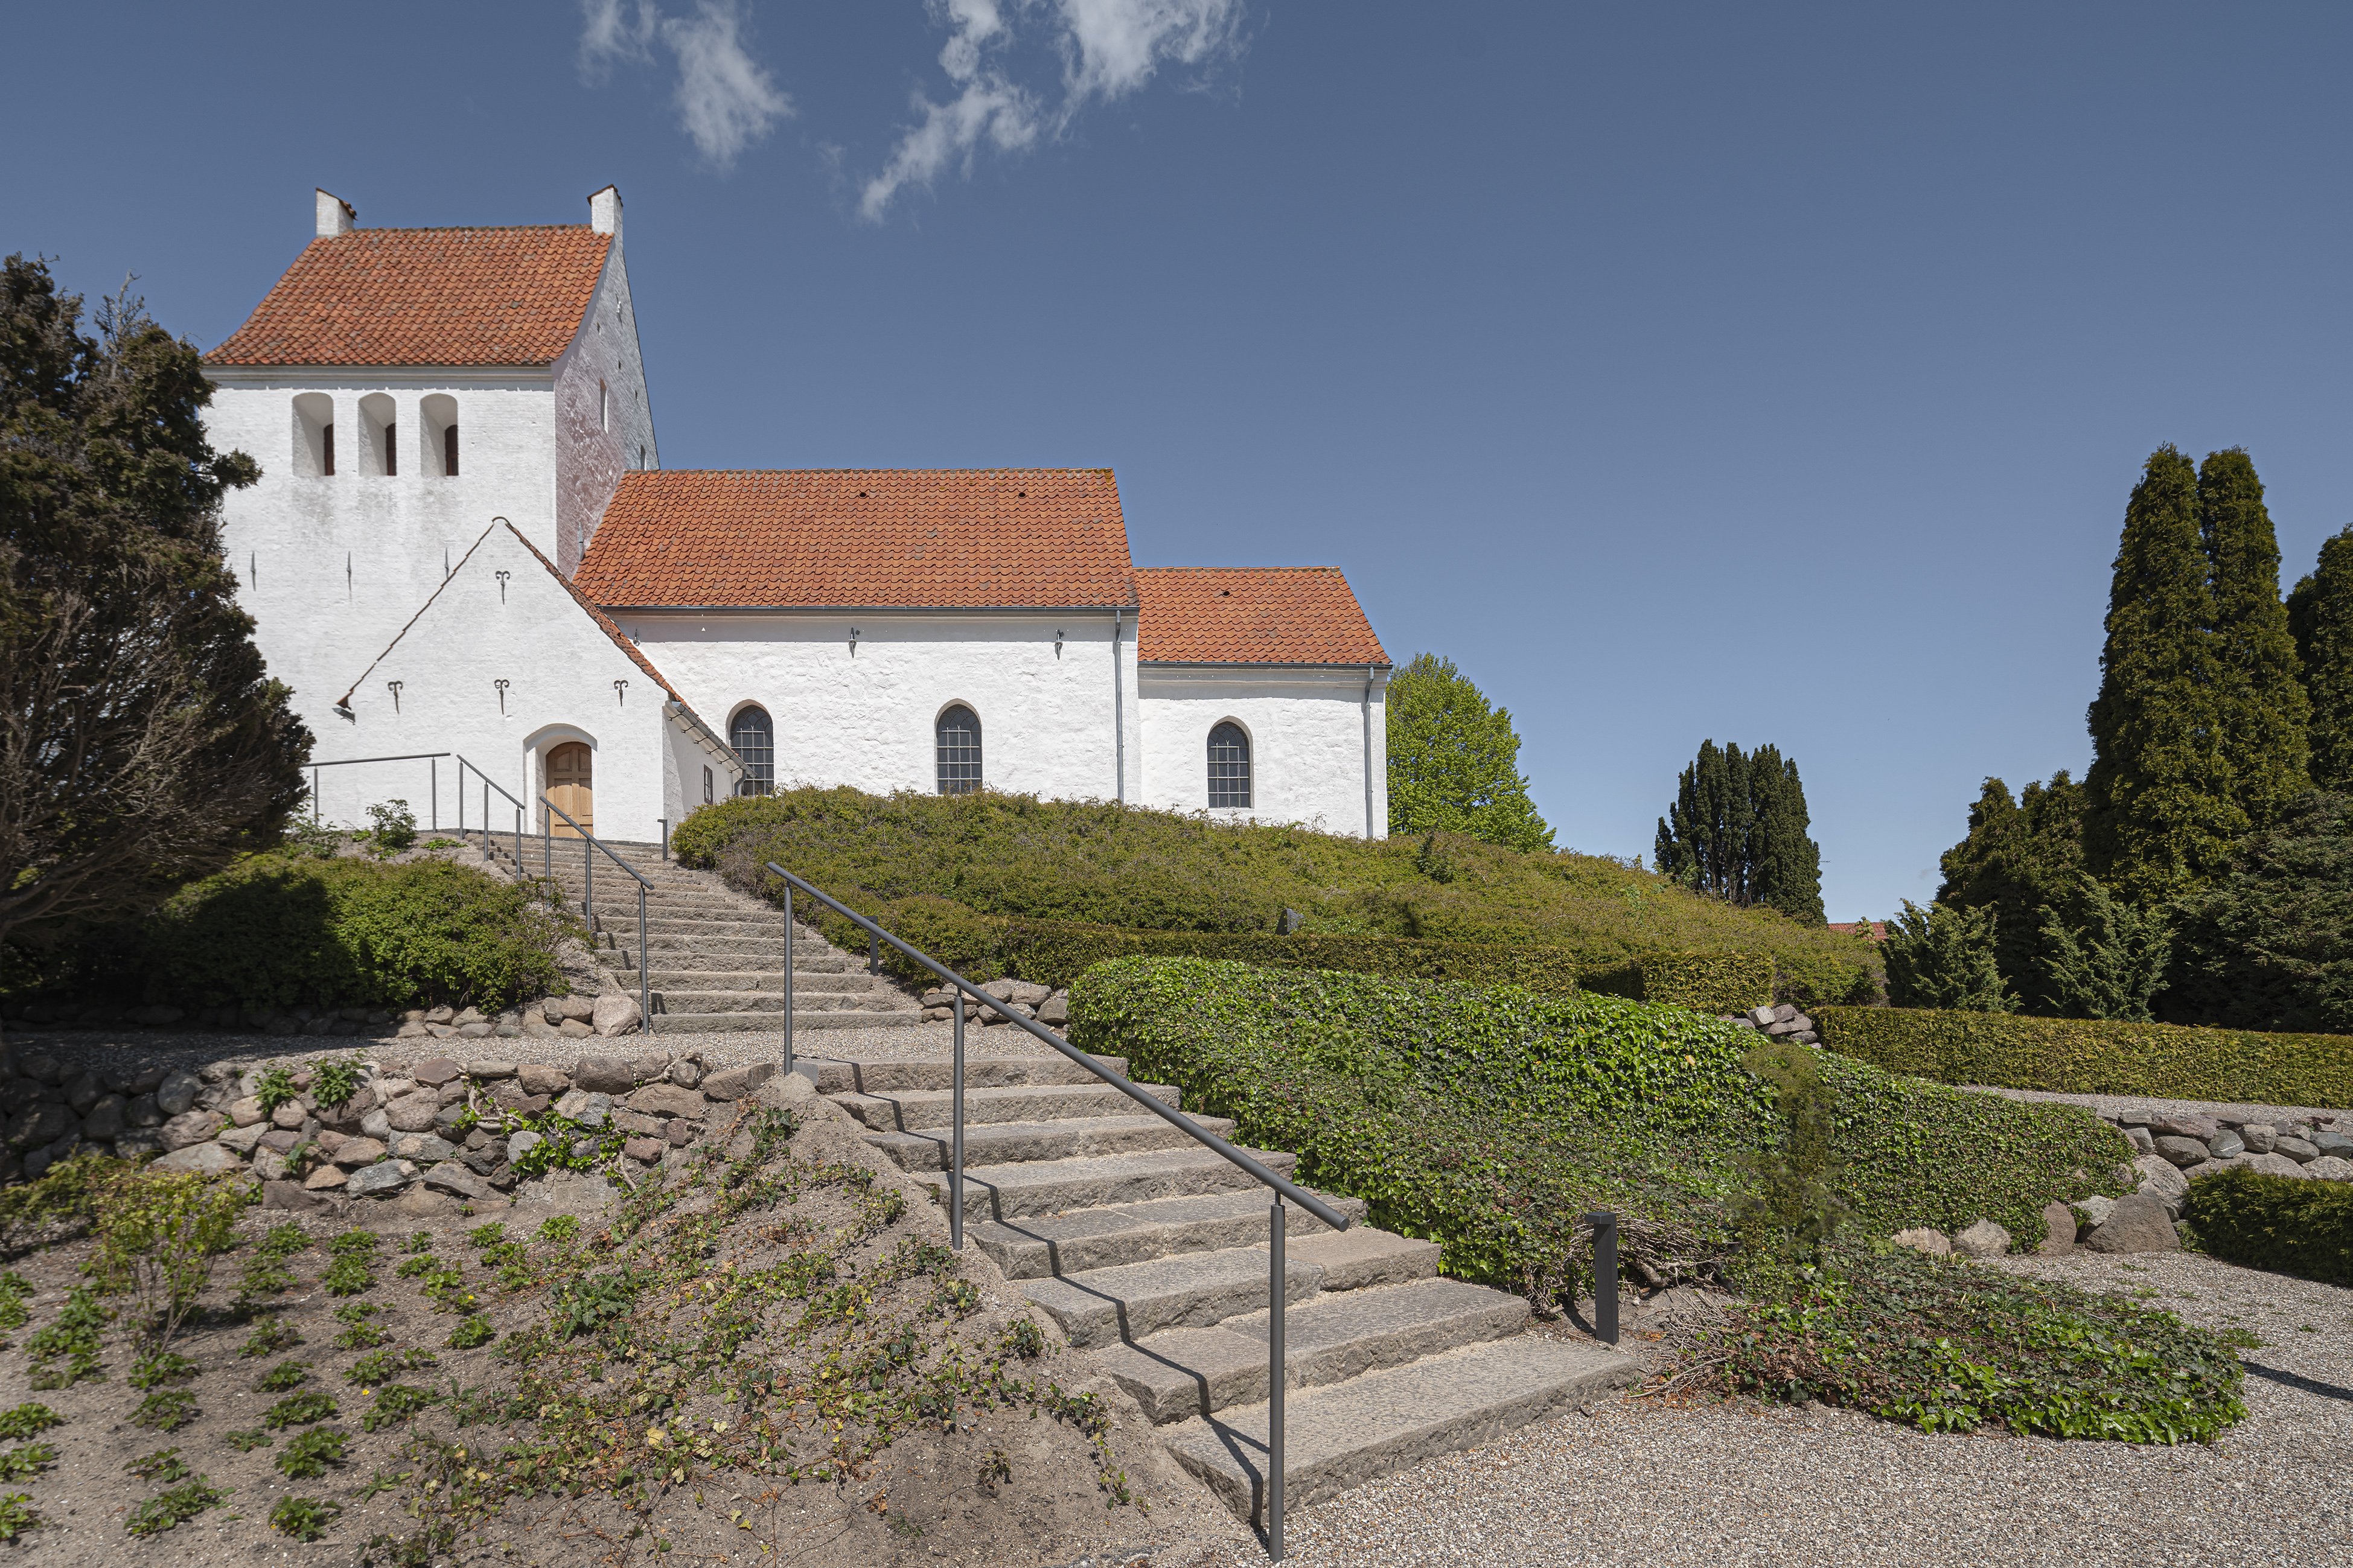 Arkitektfirma og menighedsråd har holdt møder med menigheden om planerne for den gamle kirke. Foto: Jens Lindhe